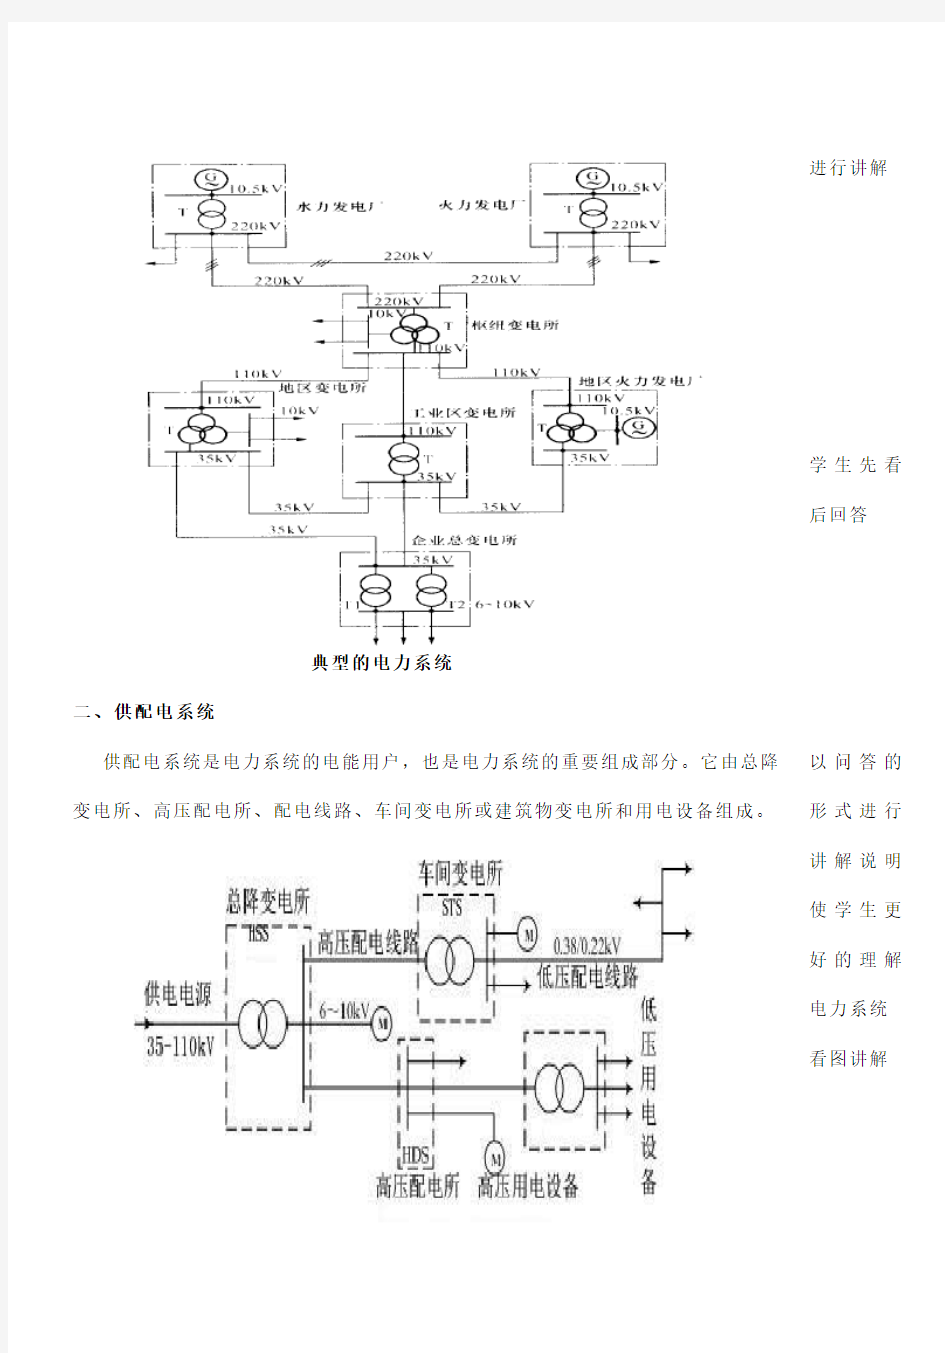 1-1电力系统和供配电系统概述